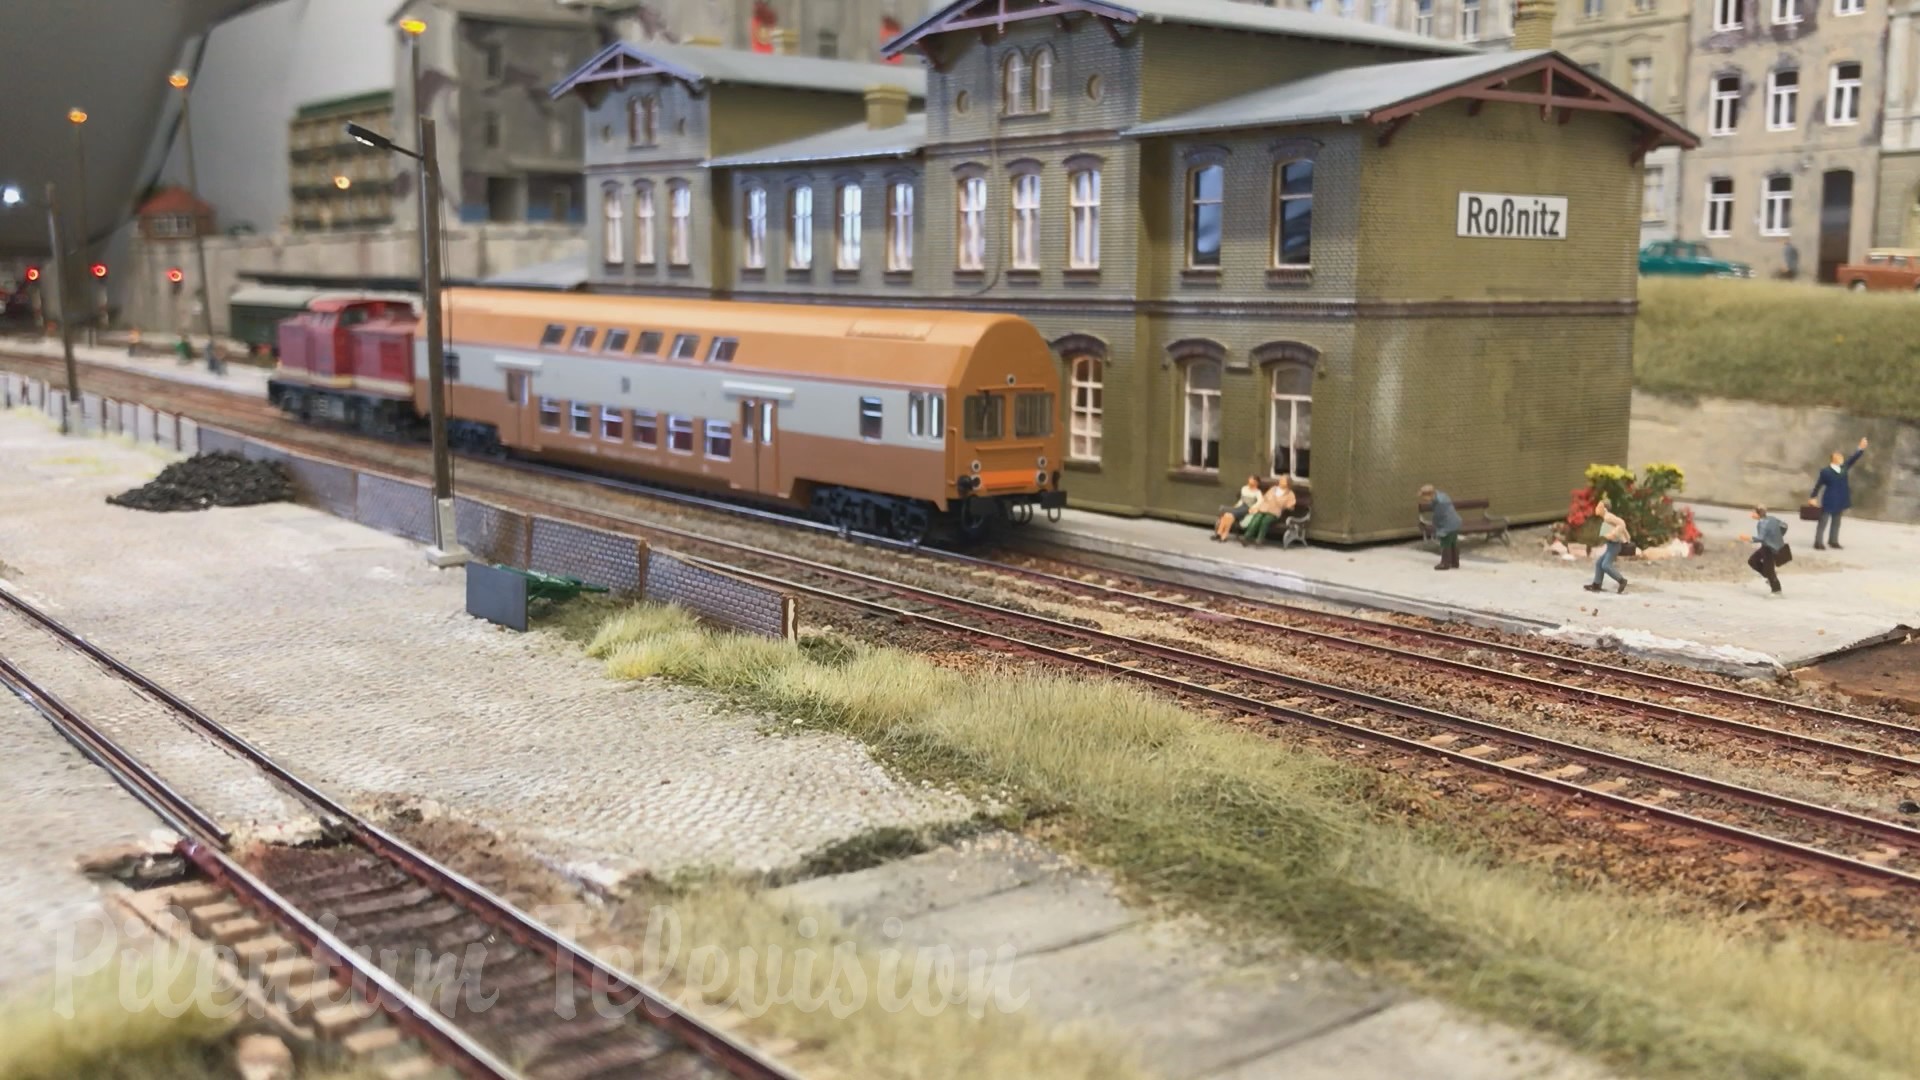 Masterpiece of Rail Transport Modeling: An East German Model Railway Layout in HO scale